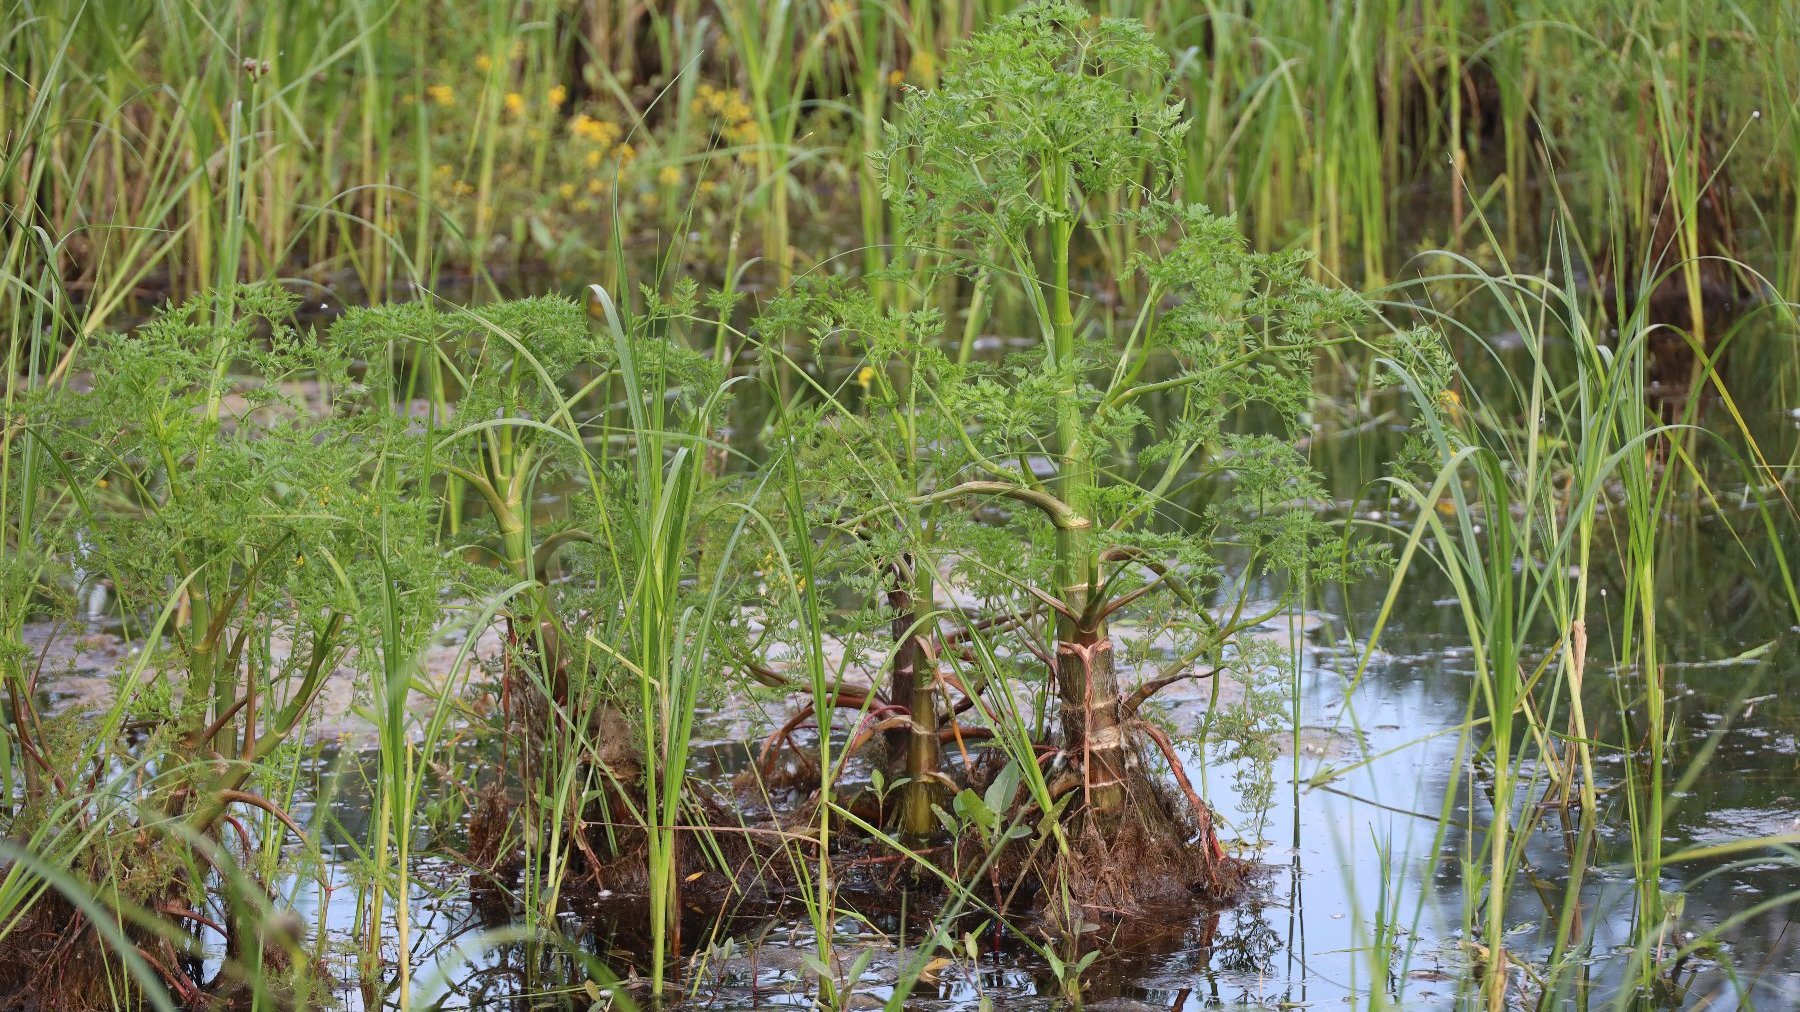 Zdjęcie przedstawia wodę w stawie lub rzece oraz zieleń - trzciny i inne.